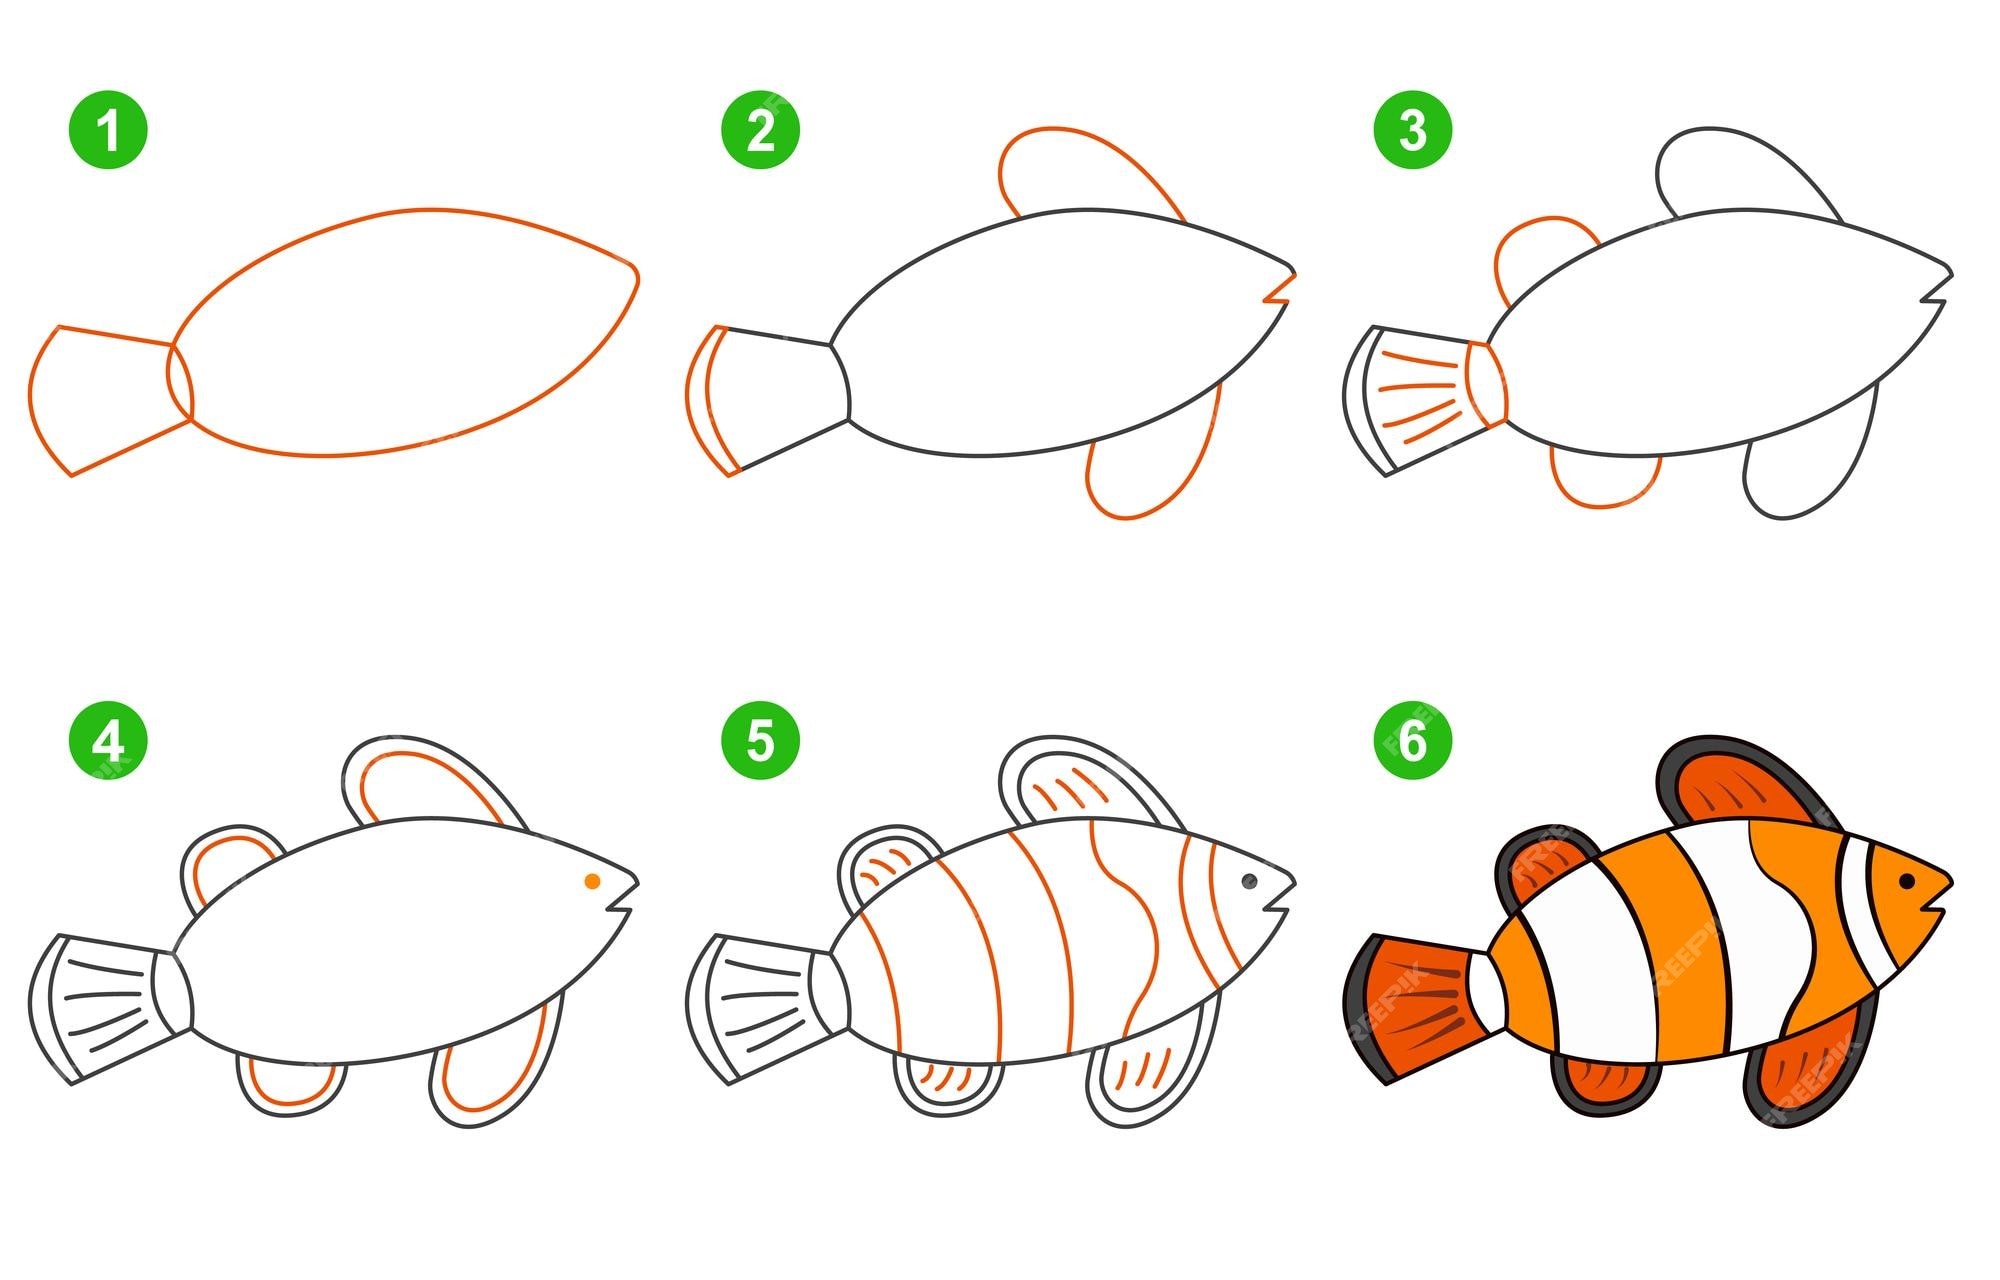 How to draw fish idea 10